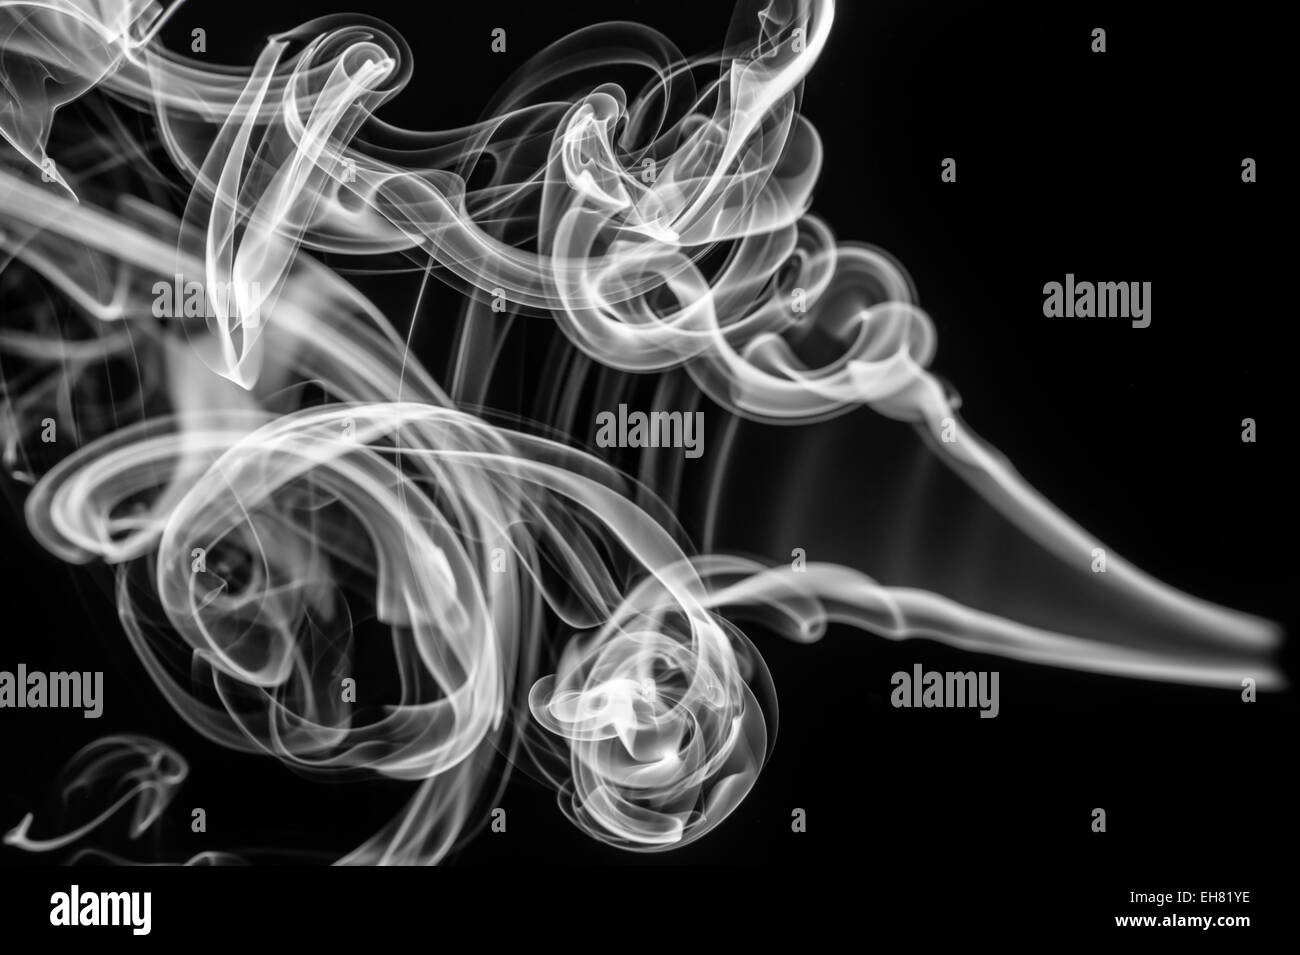 Configurazione astratta: fumo bianco volute e curve su nero Foto Stock